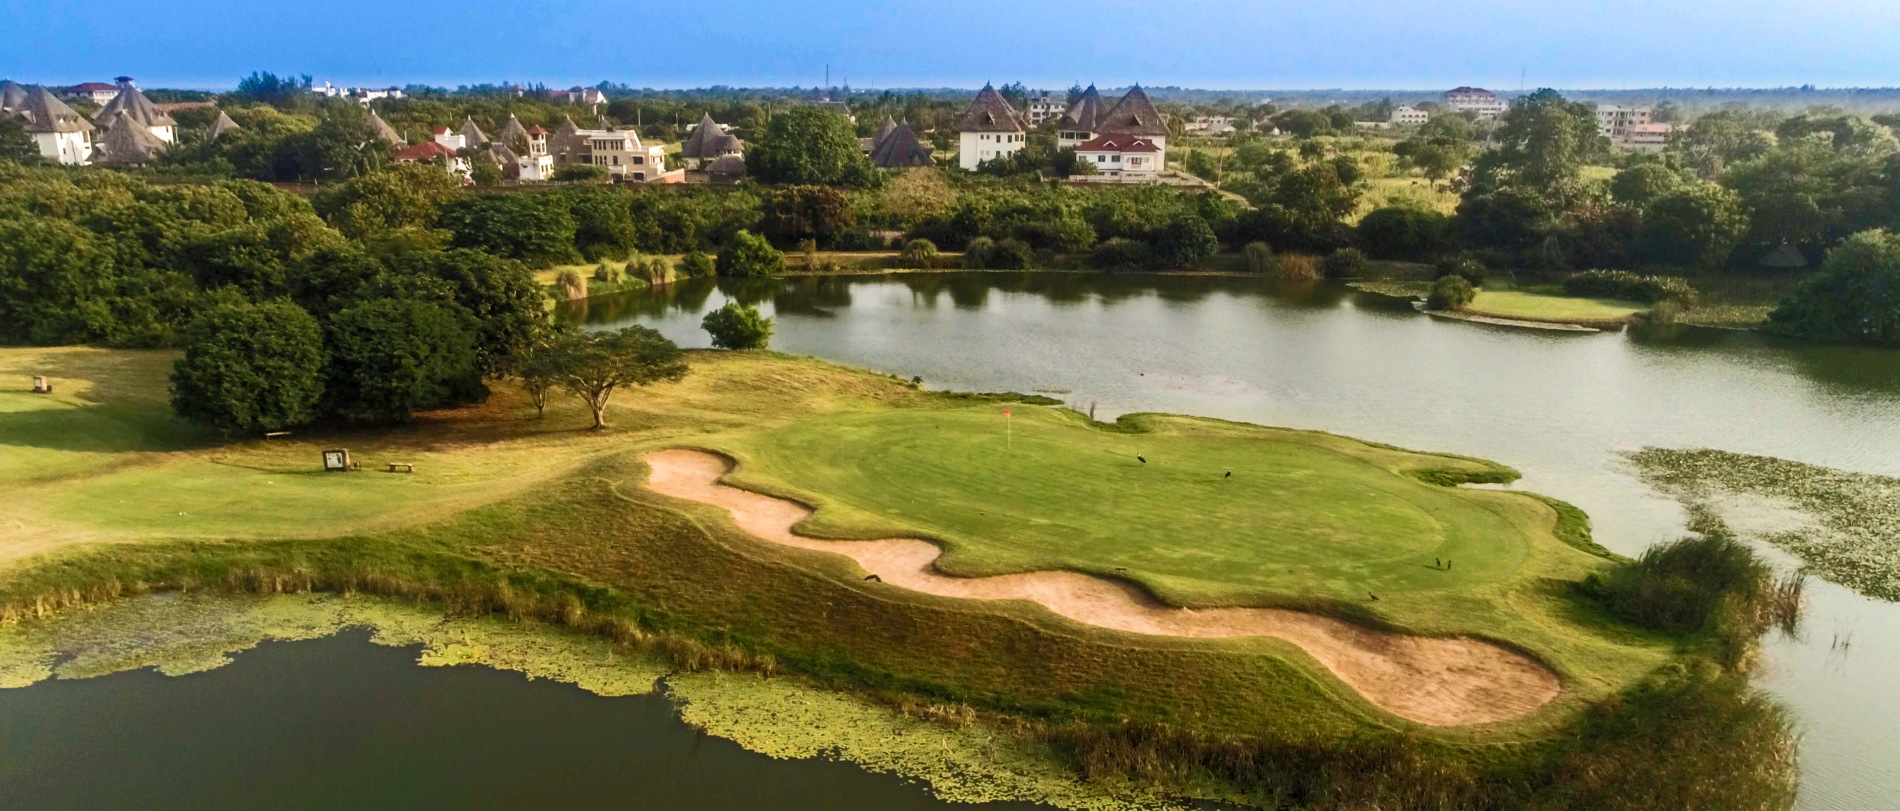 grüne golfanlage mit sandlöchern und einem großem see des Alfajiri Villas hotel in kenia